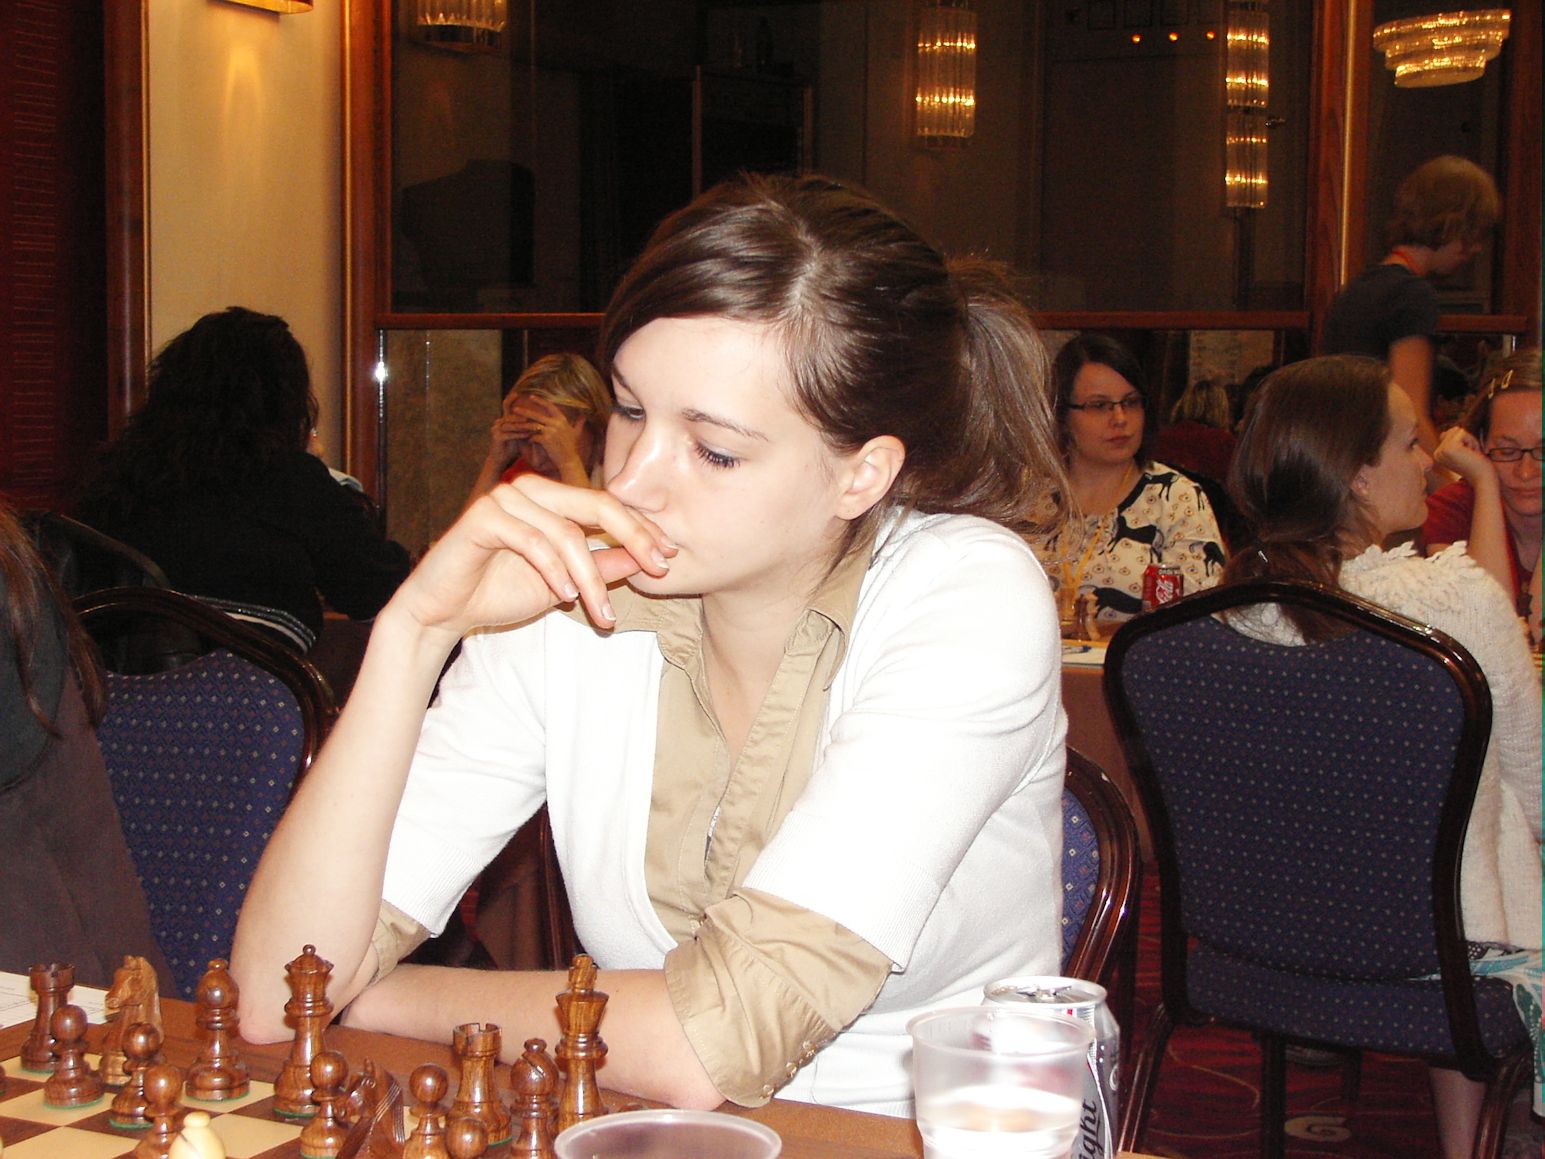 チェス女性棋士 Monika Seps